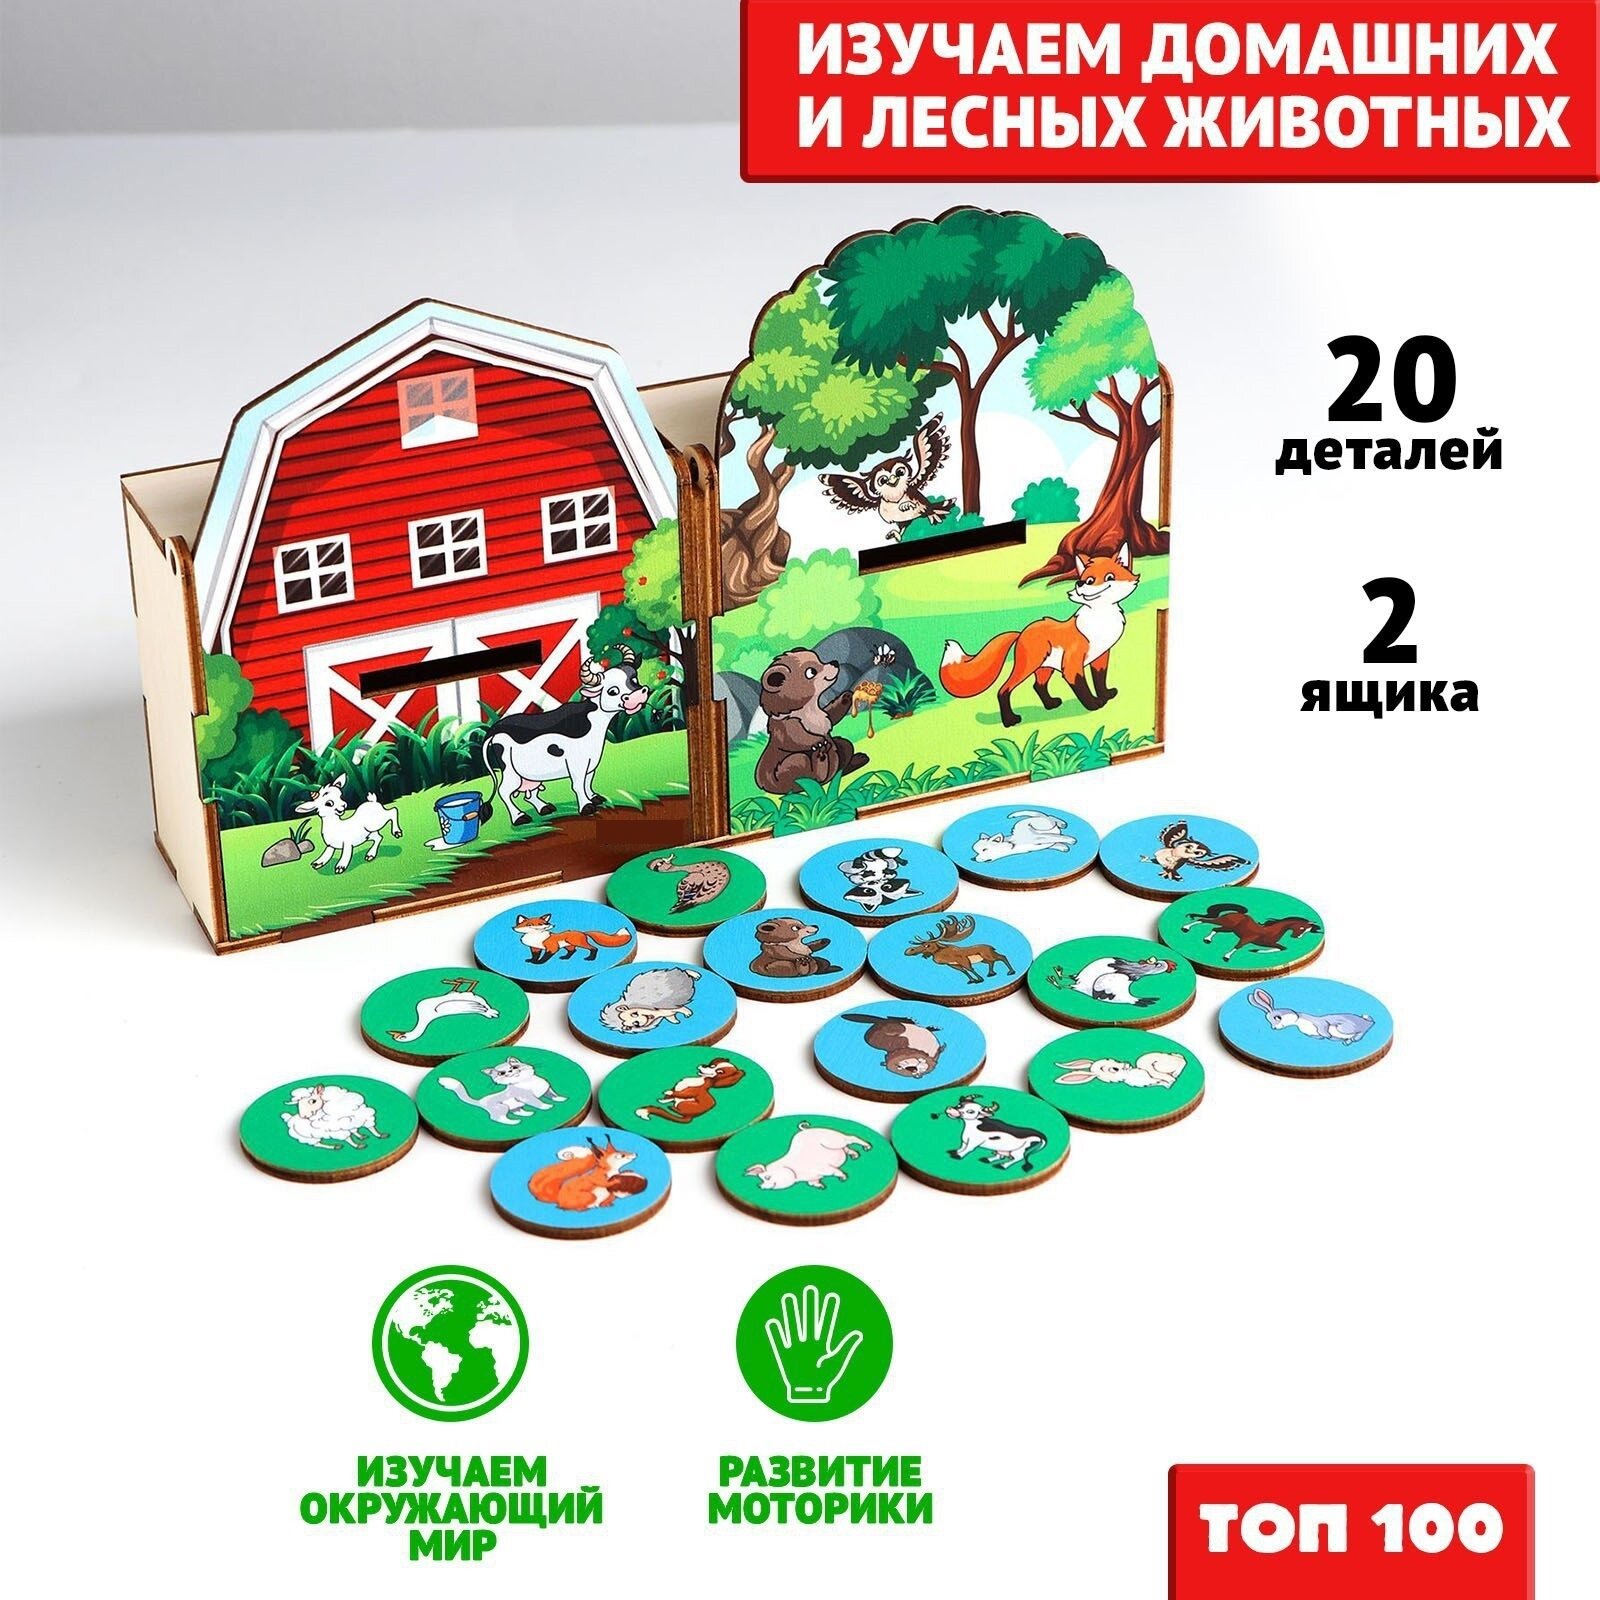 Сортер "Животные леса и фермы", Лесная мастерская, 20 деталей, 2 ящика, из дерева, для детей и малышей